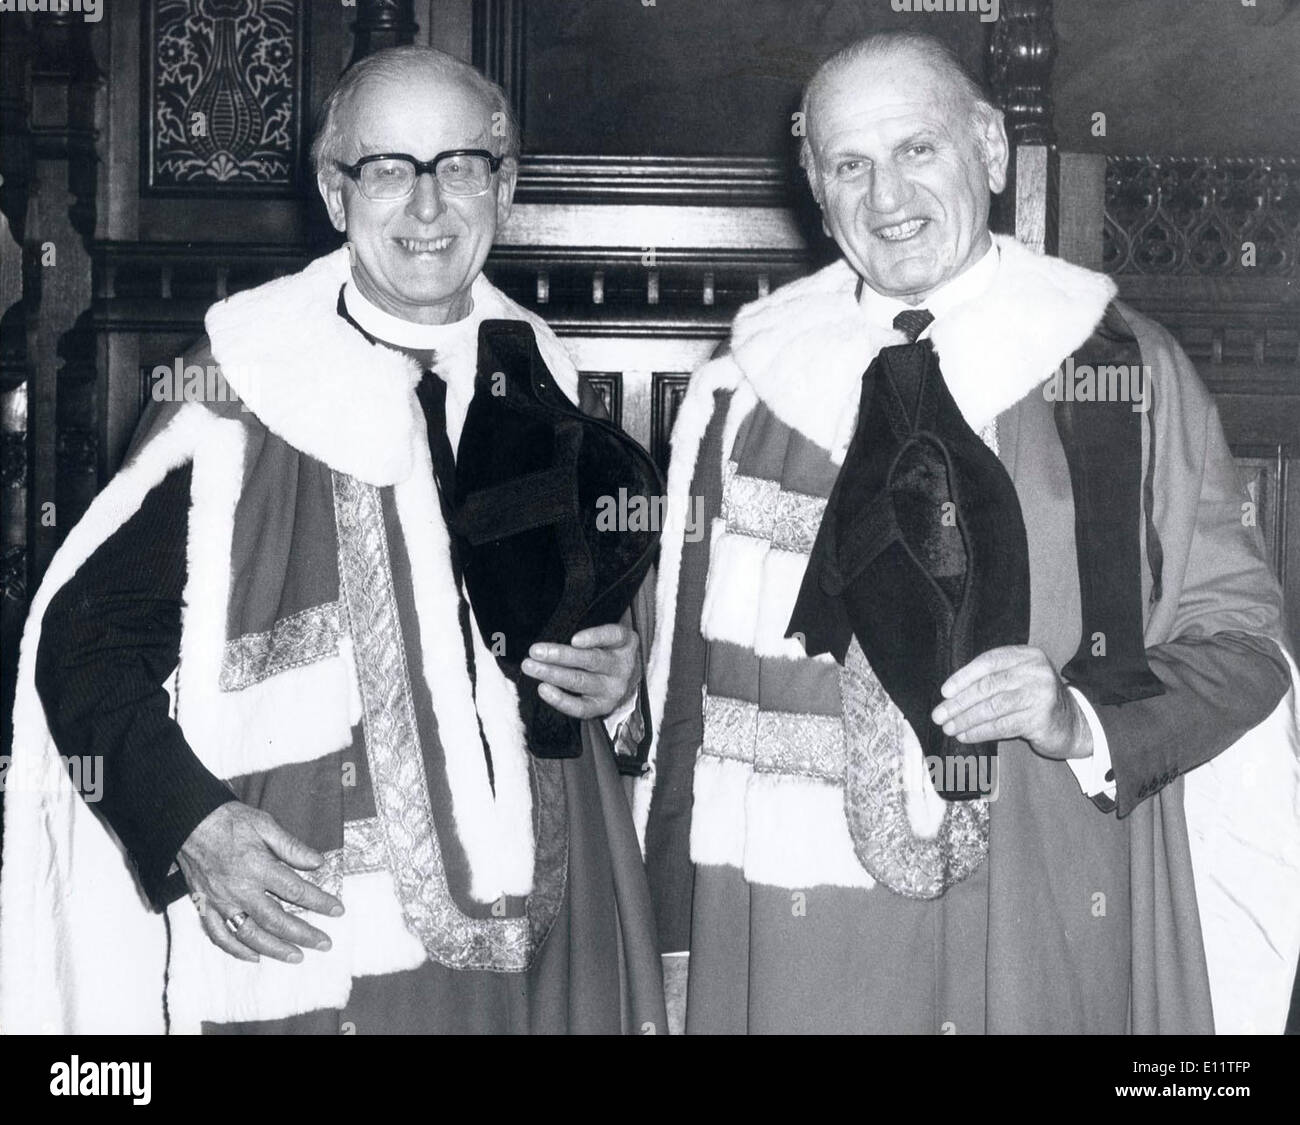 Mar 05, 1980 - Londres, Angleterre, Royaume-Uni - LORD COGGAN (L) et LORD SIEFF sont dans leurs robes après qu'ils ont été présentés à la Chambre des Lords. Banque D'Images